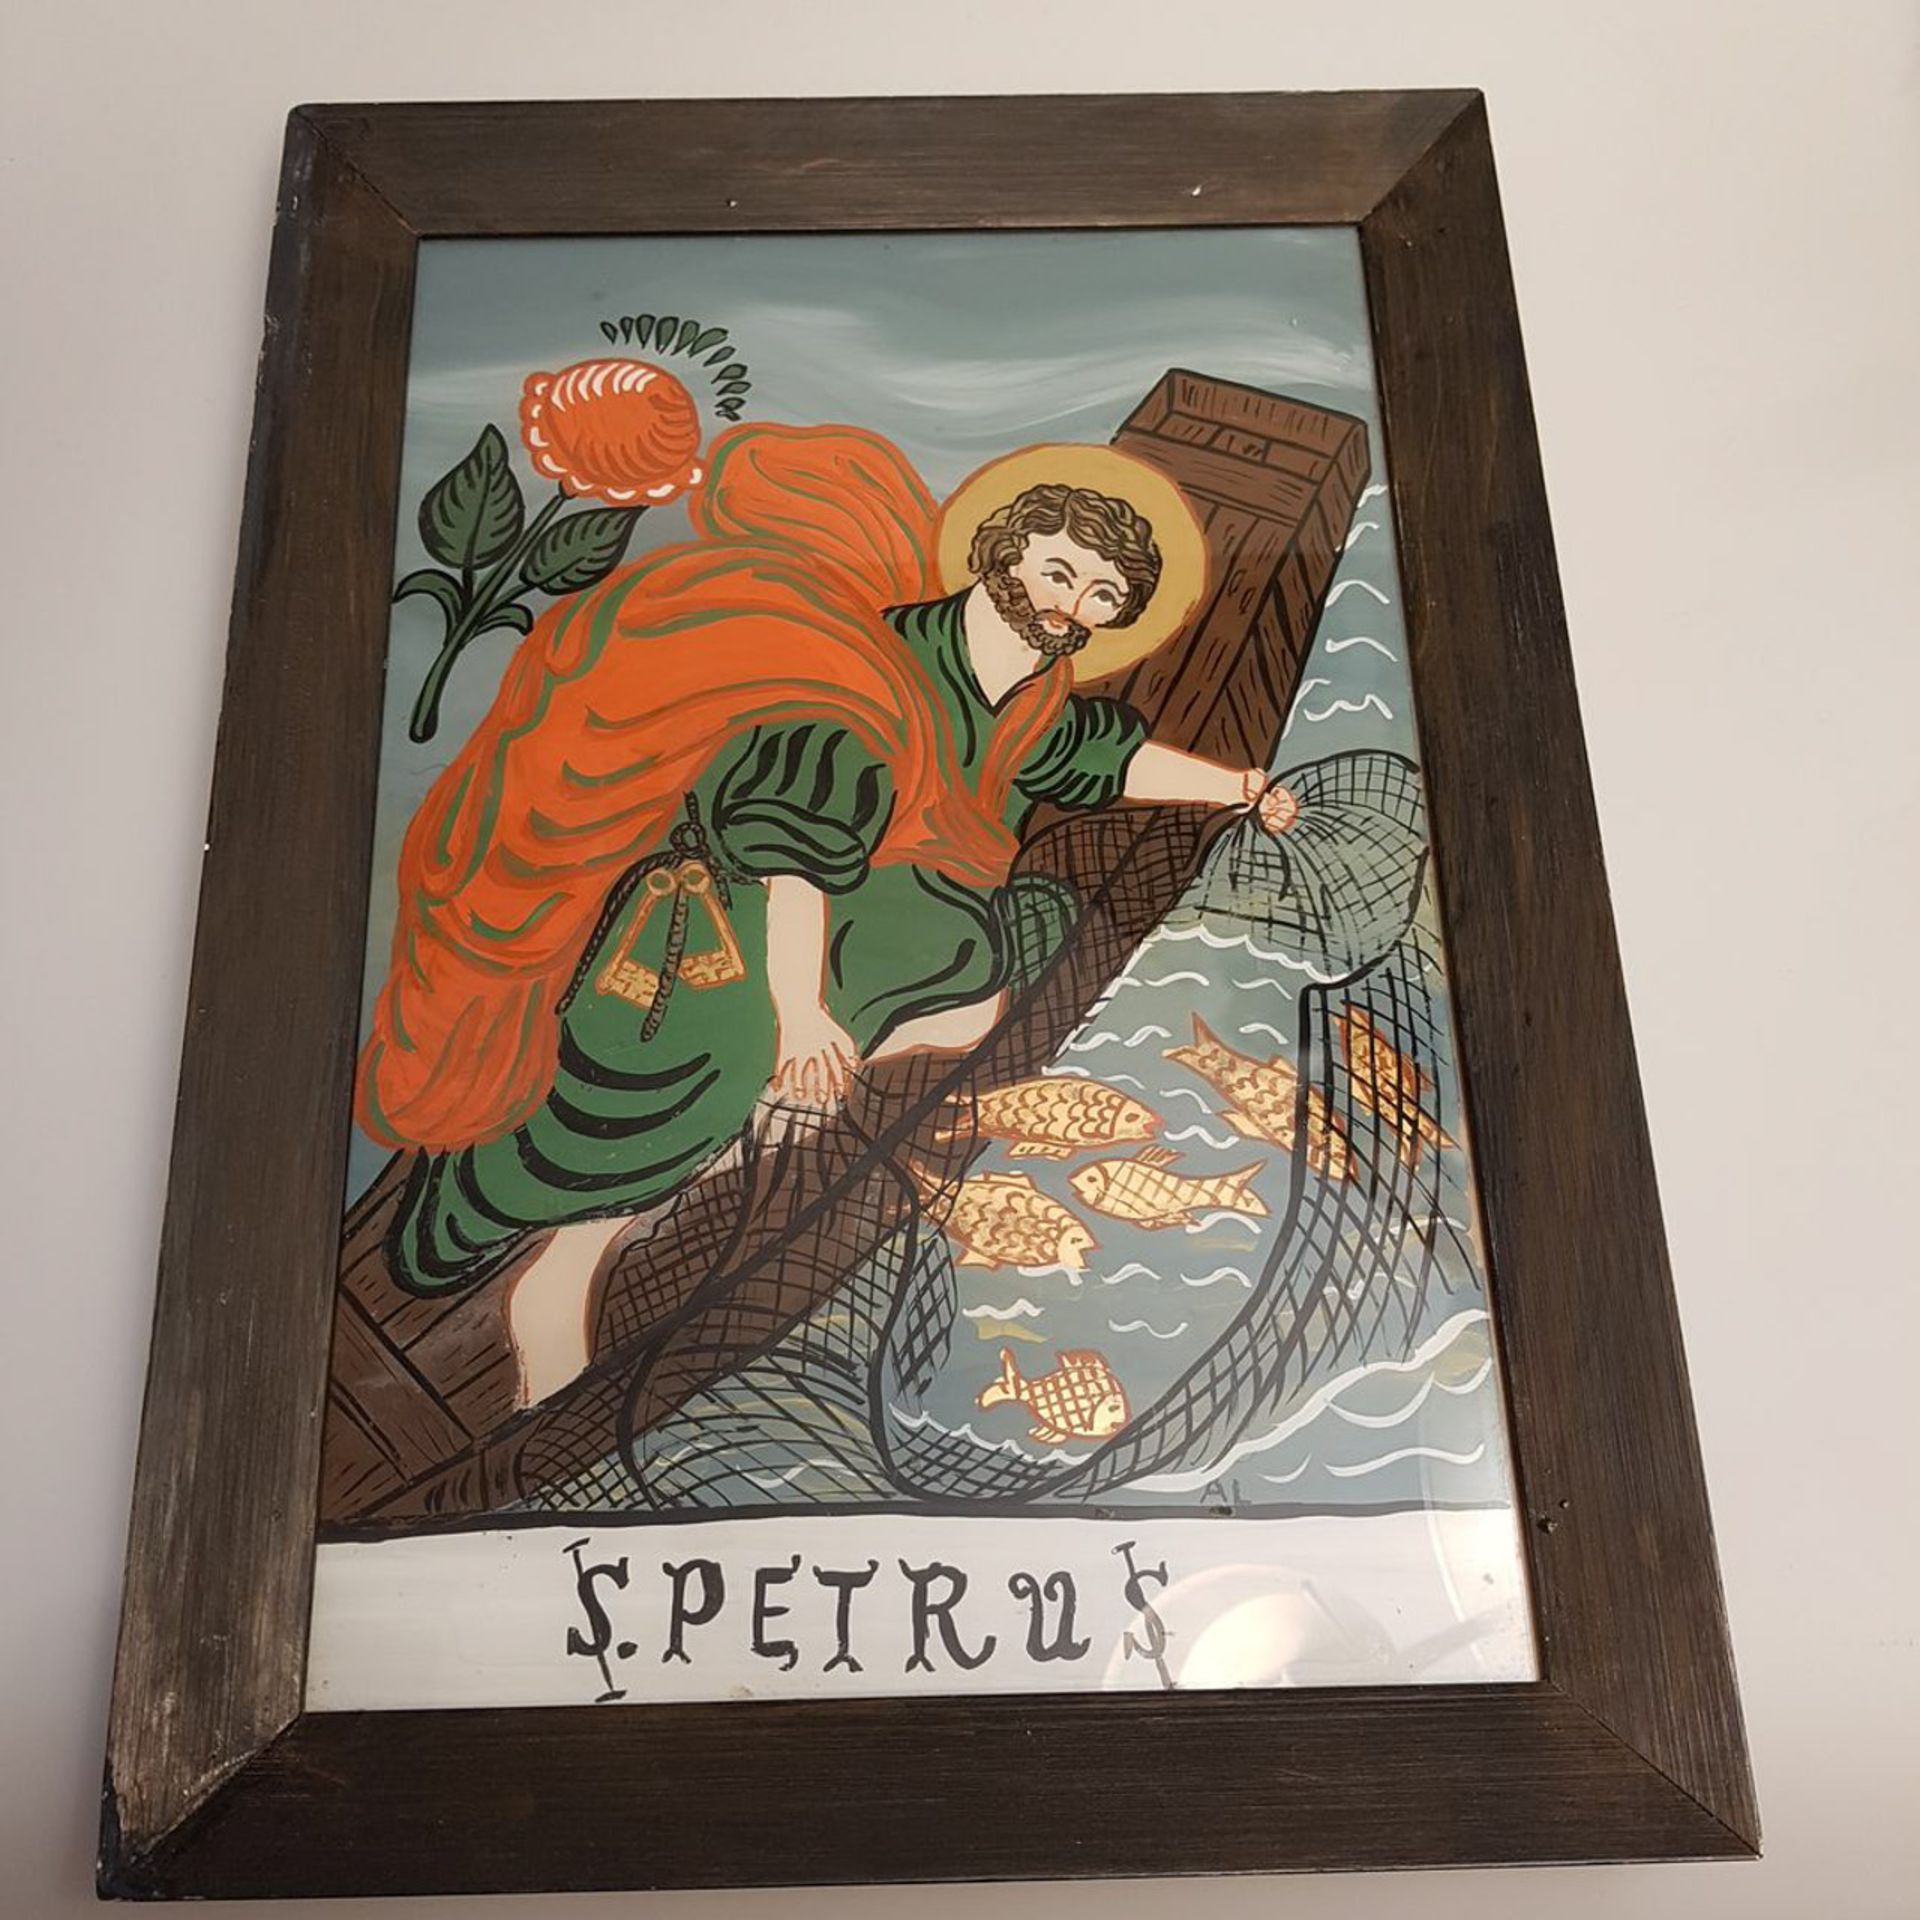 Hinterglasmalerei, "S Petrus", Grösse: 26 x 36 cm